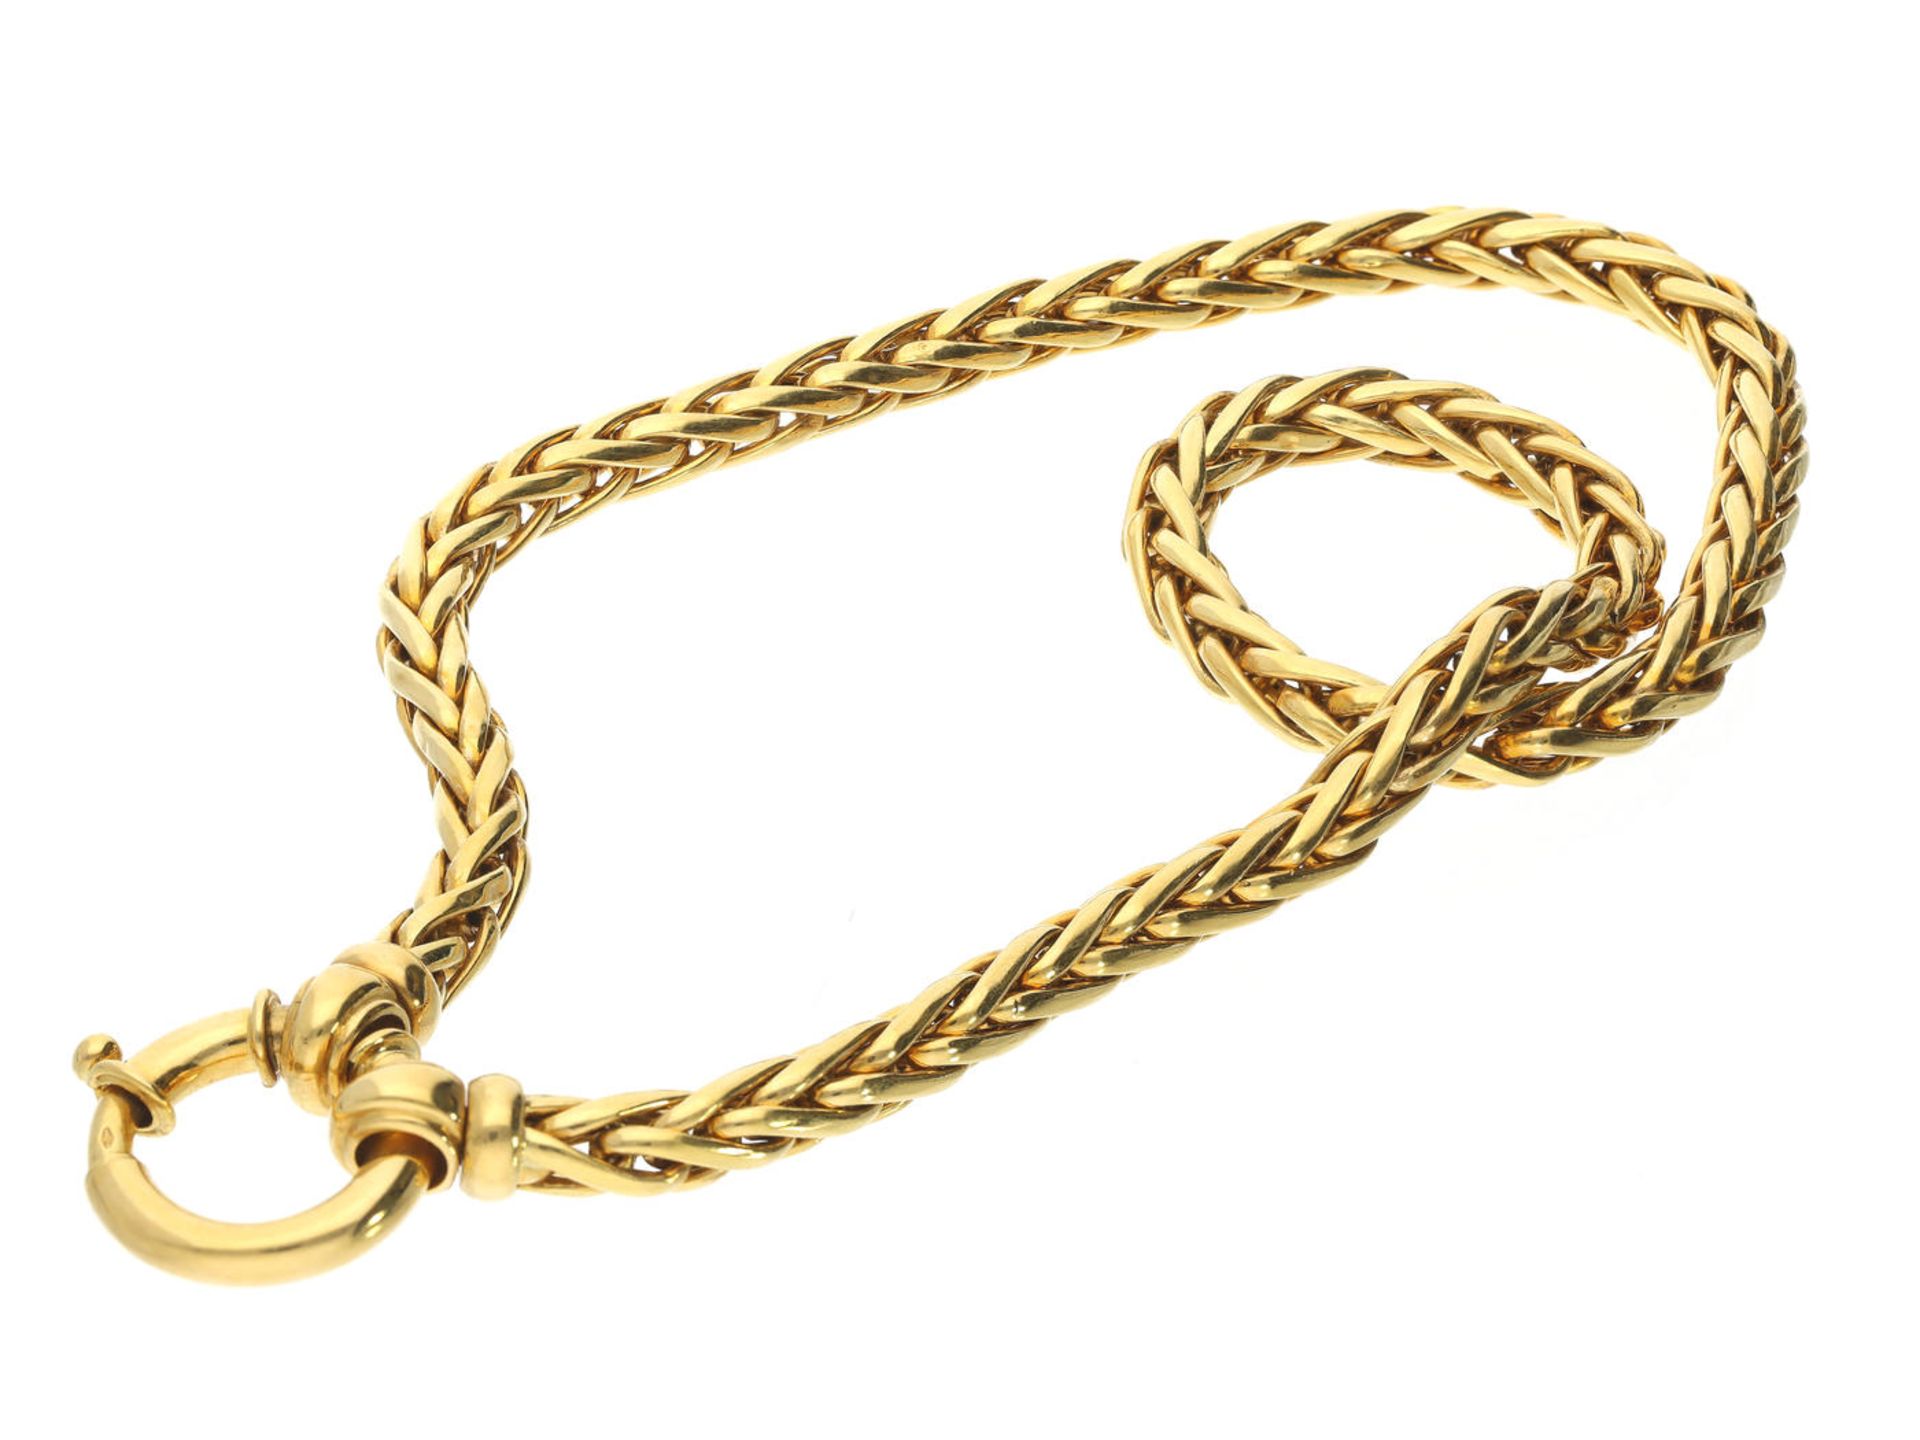 Kette/Collier: hochwertige und ehemals teure 18K Goldkette mit dekorativem Zopfmuster und großem